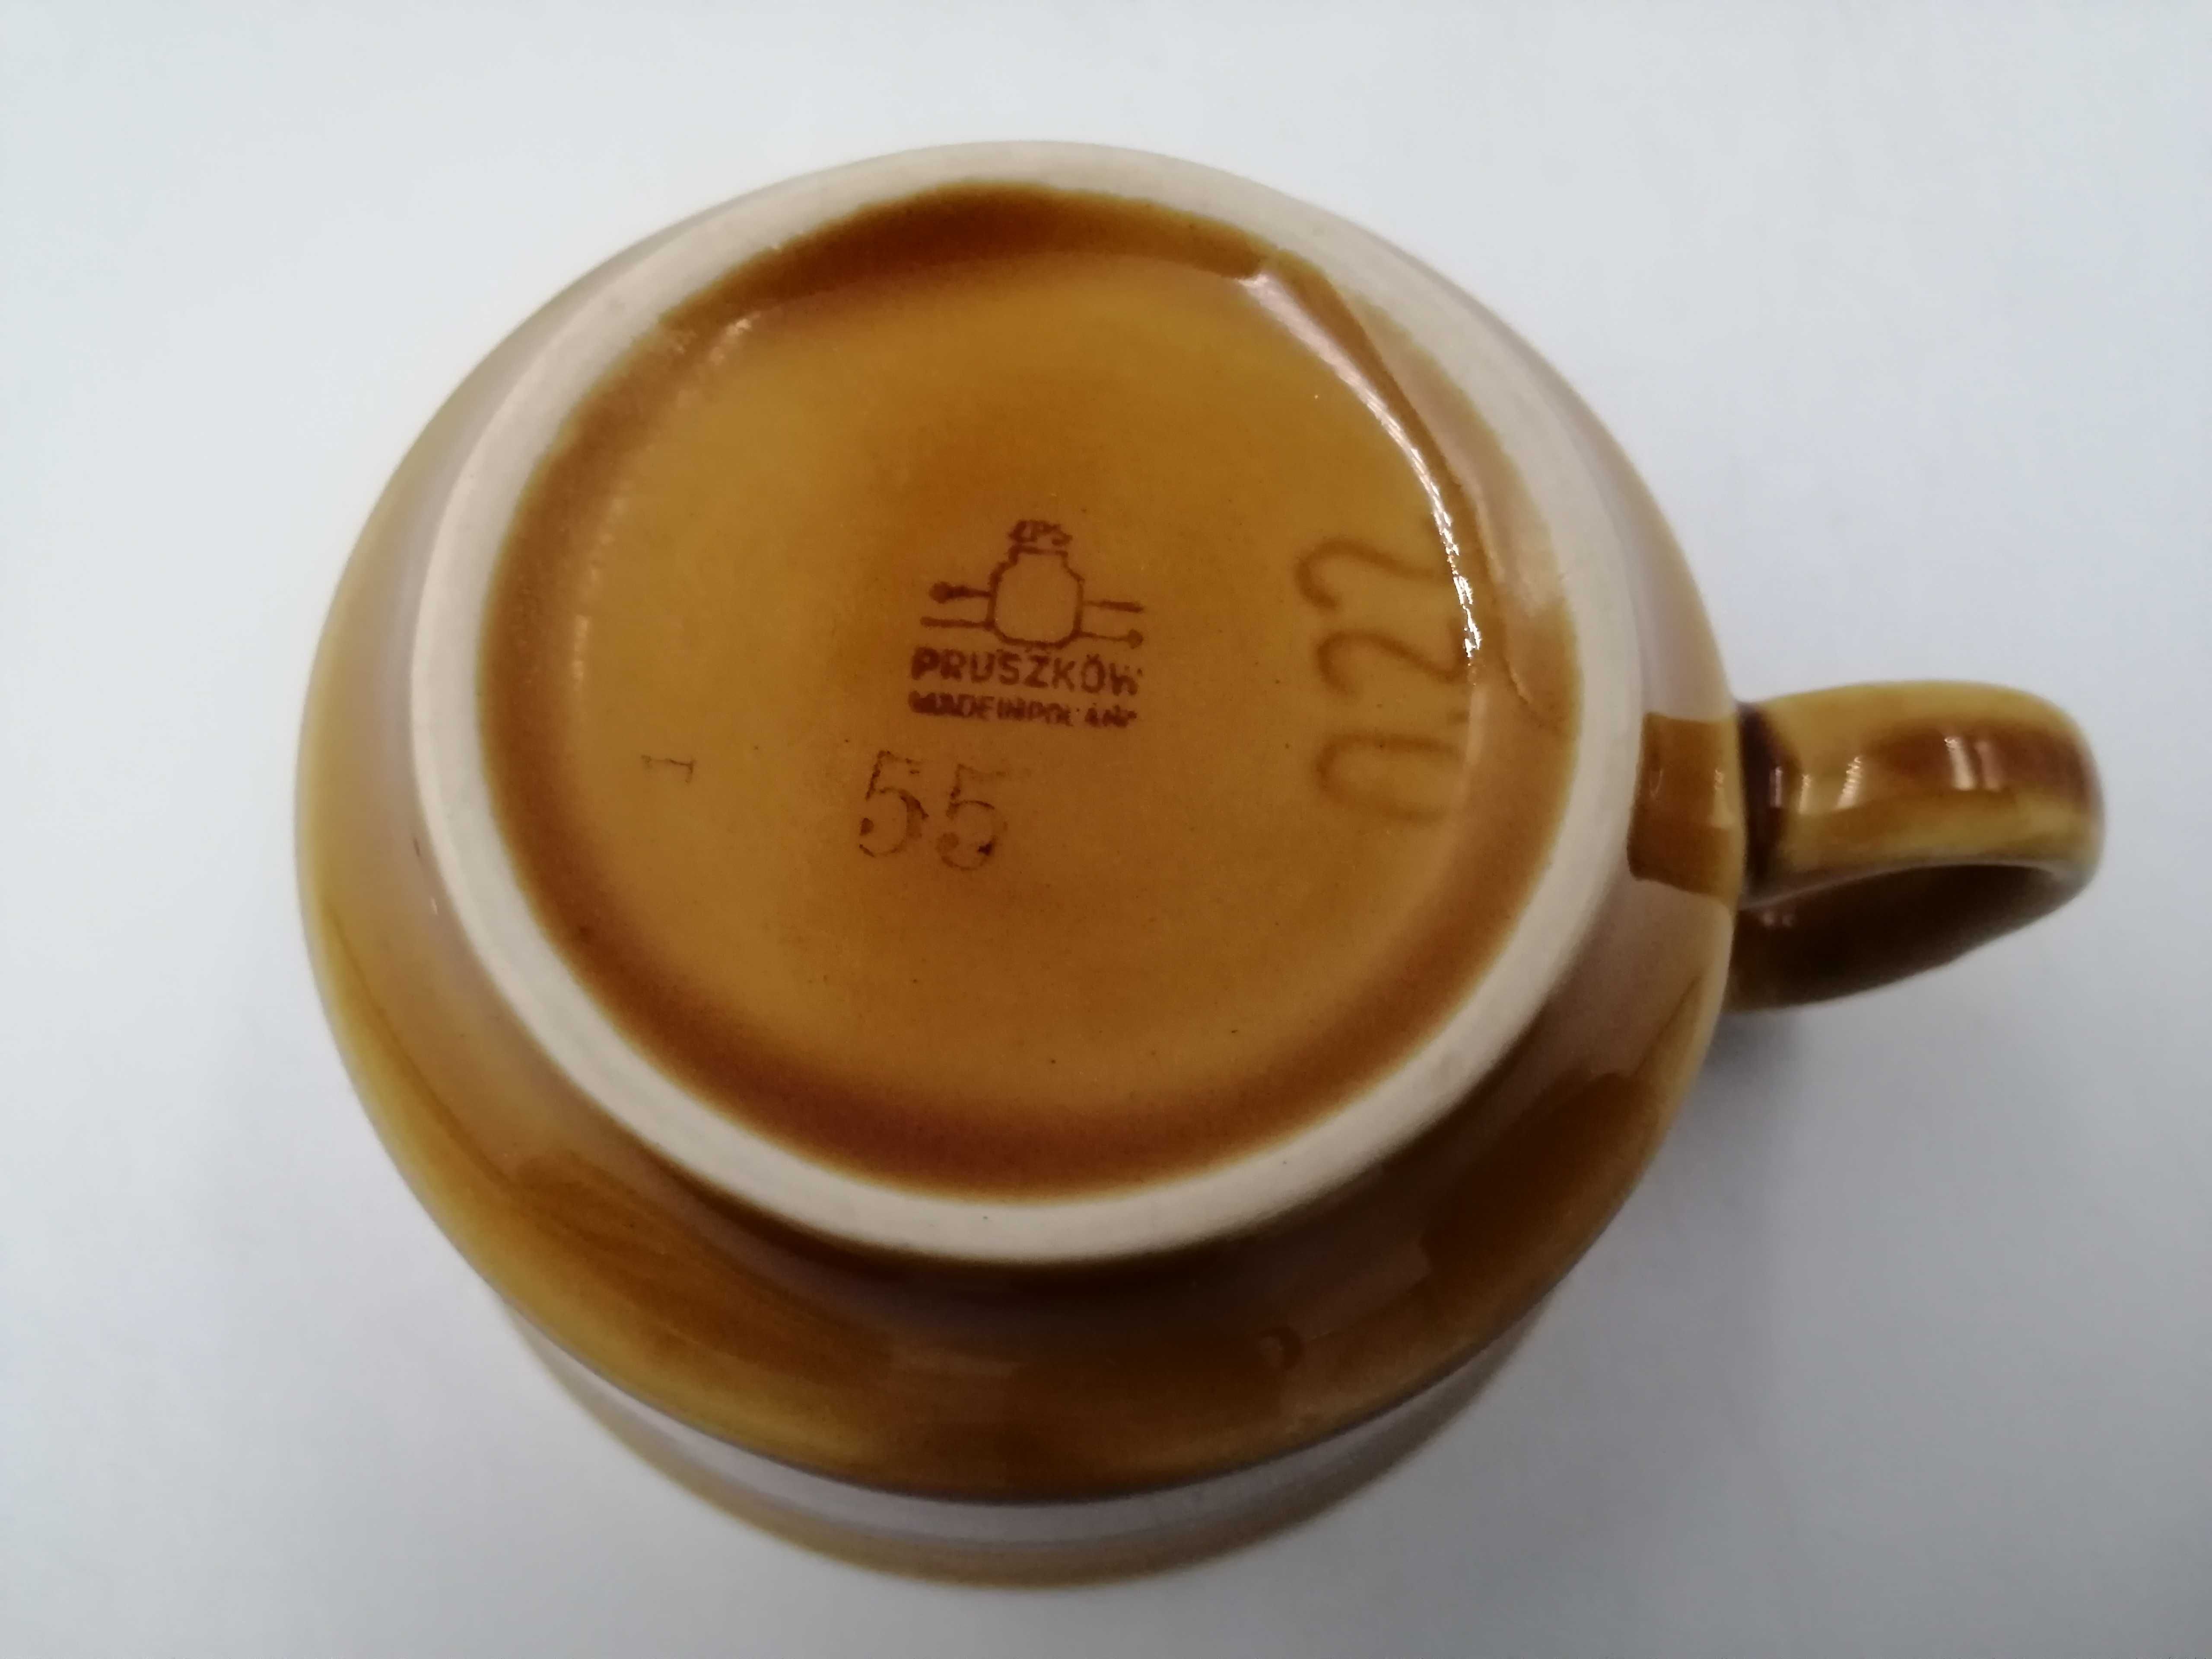 Serwis Pruszków do kawy herbaty porcelit z PRL